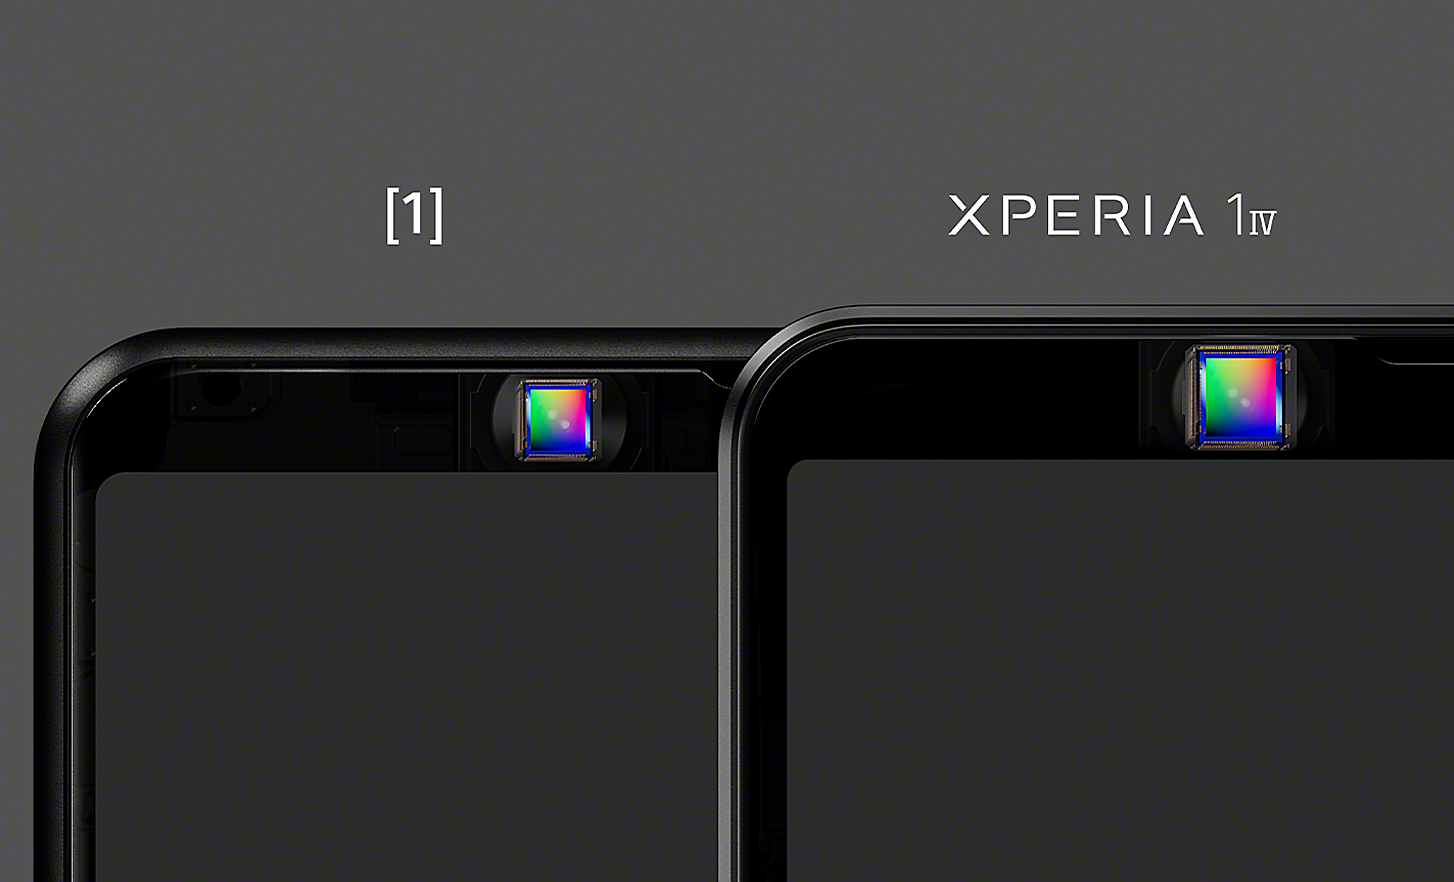 Bild som jämför den främre kamerans bildsensor på Xperia 1 IV med den mindre sensorn på den föregående modellen